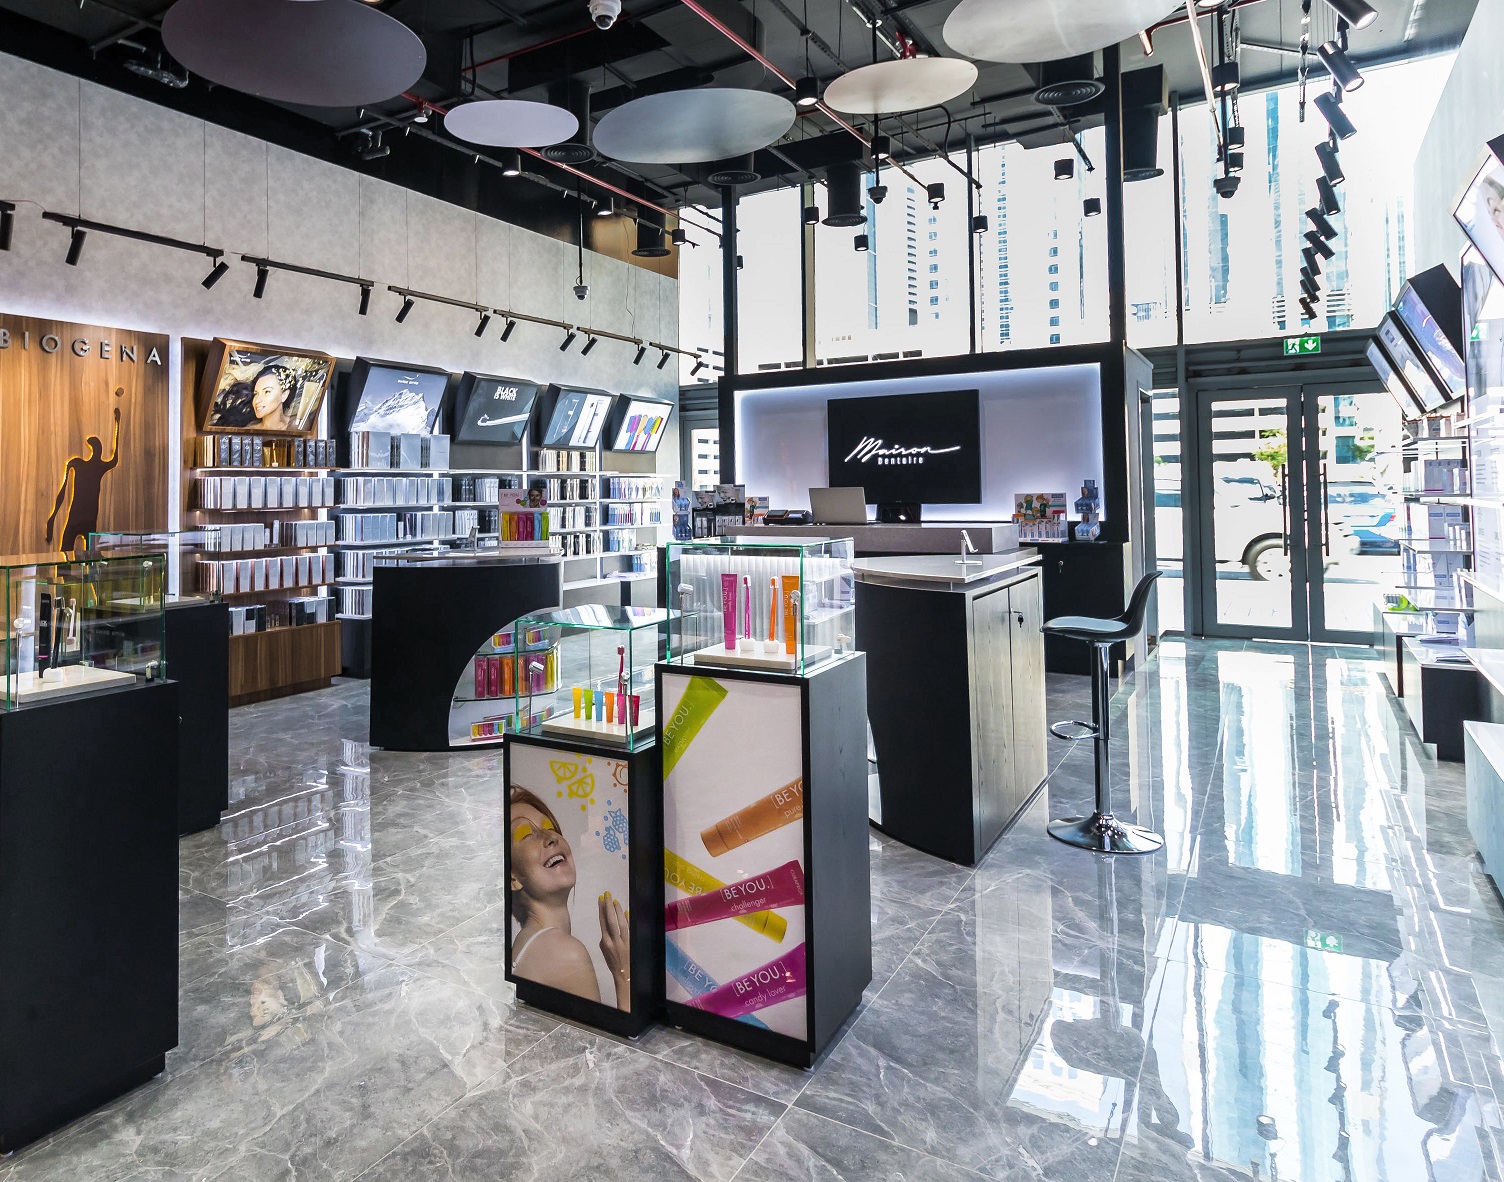 علامة ميزون دنتير تفتتح أول متجر لها في الإمارات المتحدة